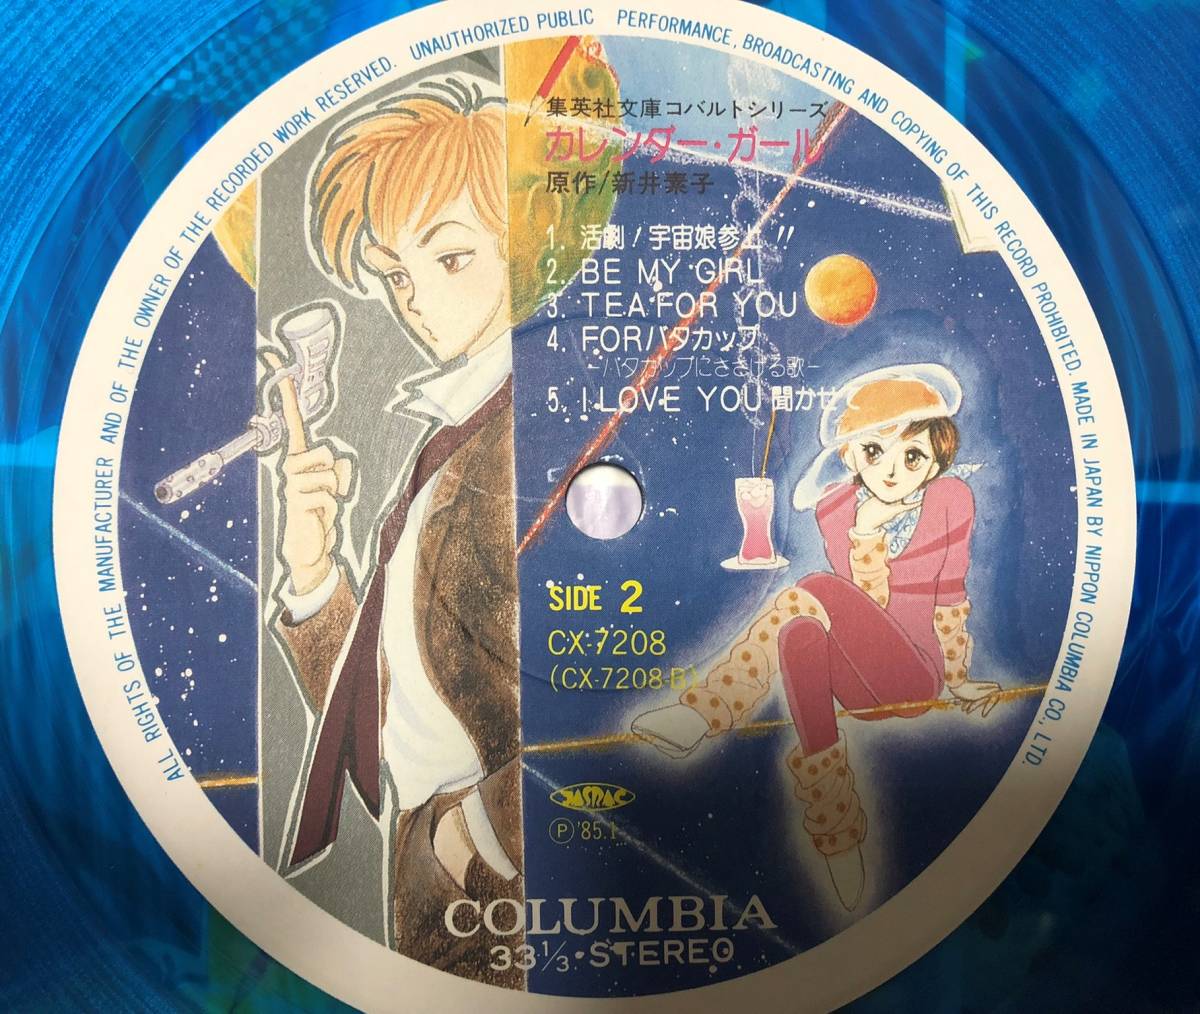 LP【 мультипликация  *  OST】 календарь  *  ...【Columbia *  CX-7208 *  8 5 лет   японское издание  *  ... идет в комплекте  *   цвет  винил  *   птица ... *  ... *  ...】